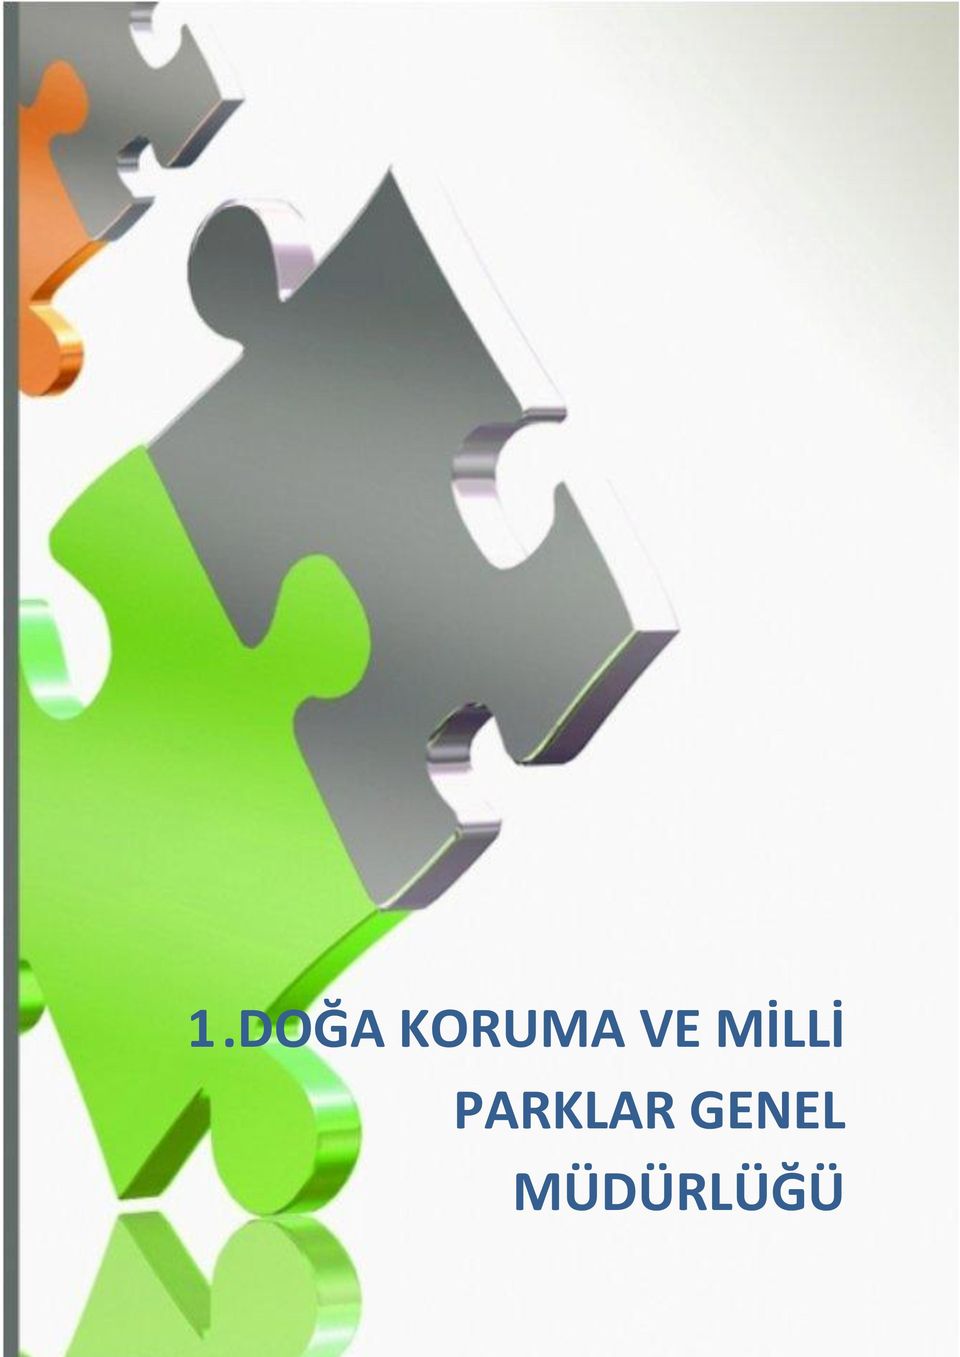 AR-GE NİTELİKLİ PROJELER 1.